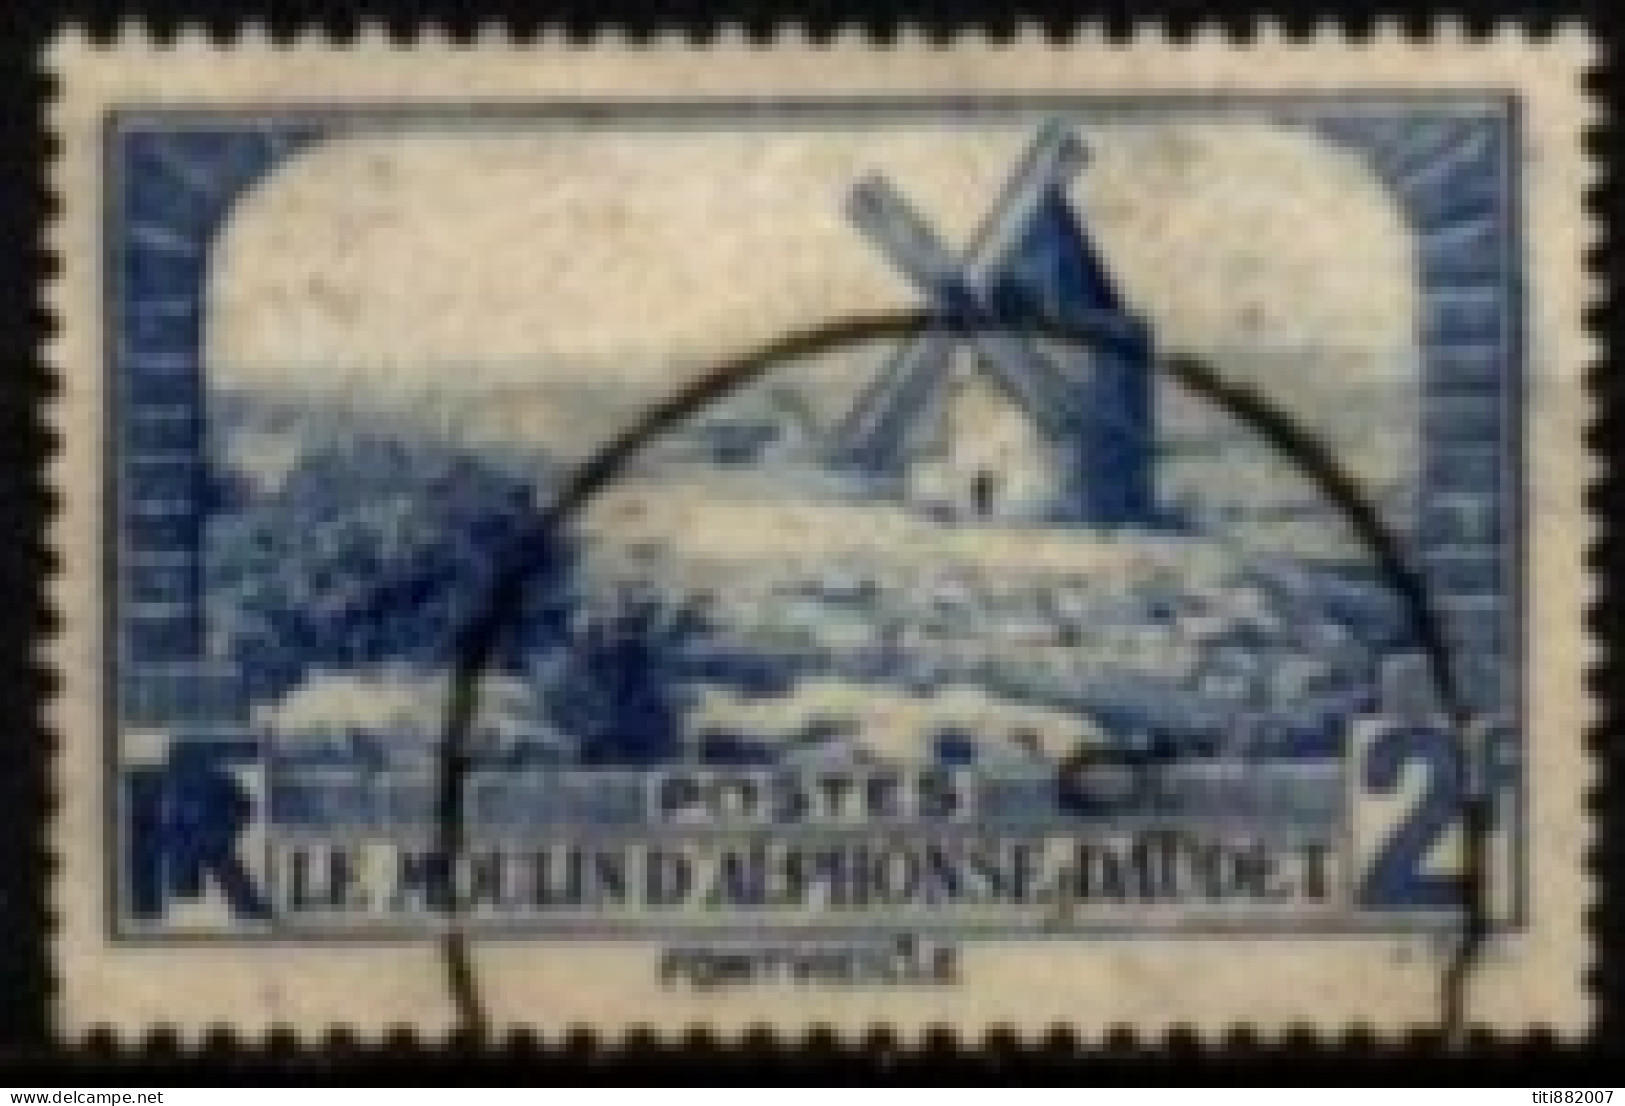 FRANCE    -   1935 .   Y&T N° 311 Oblitéré.    Le Moulin D' Alphonse Daudet. - Gebruikt